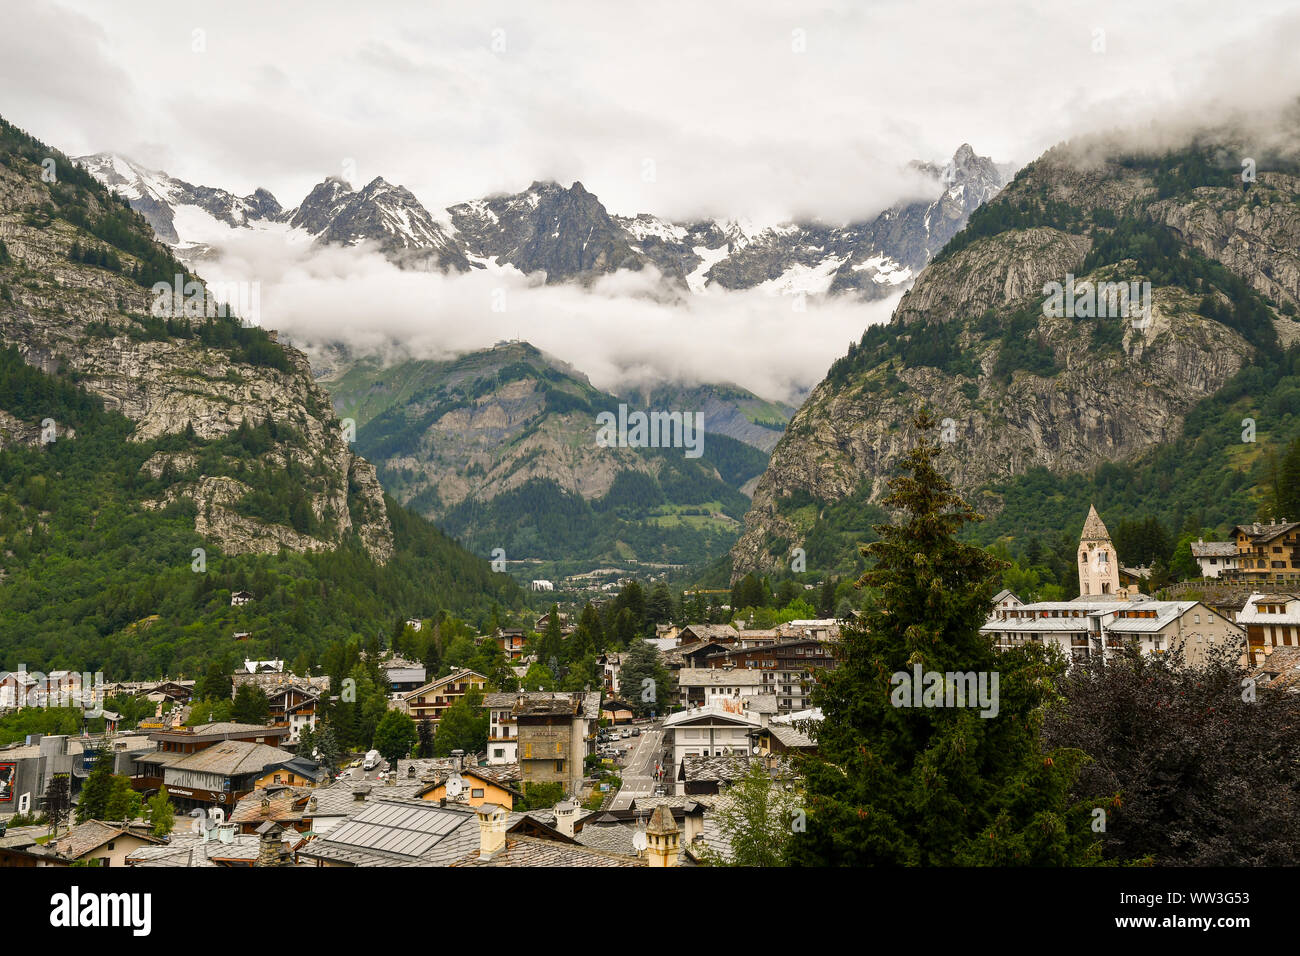 Anzeigen von Courmayeur Stadt am Fuße des Mont Blanc mit einem bewölkten Himmel im Sommer erhöht, Aostatal, Alpen, Italien Stockfoto